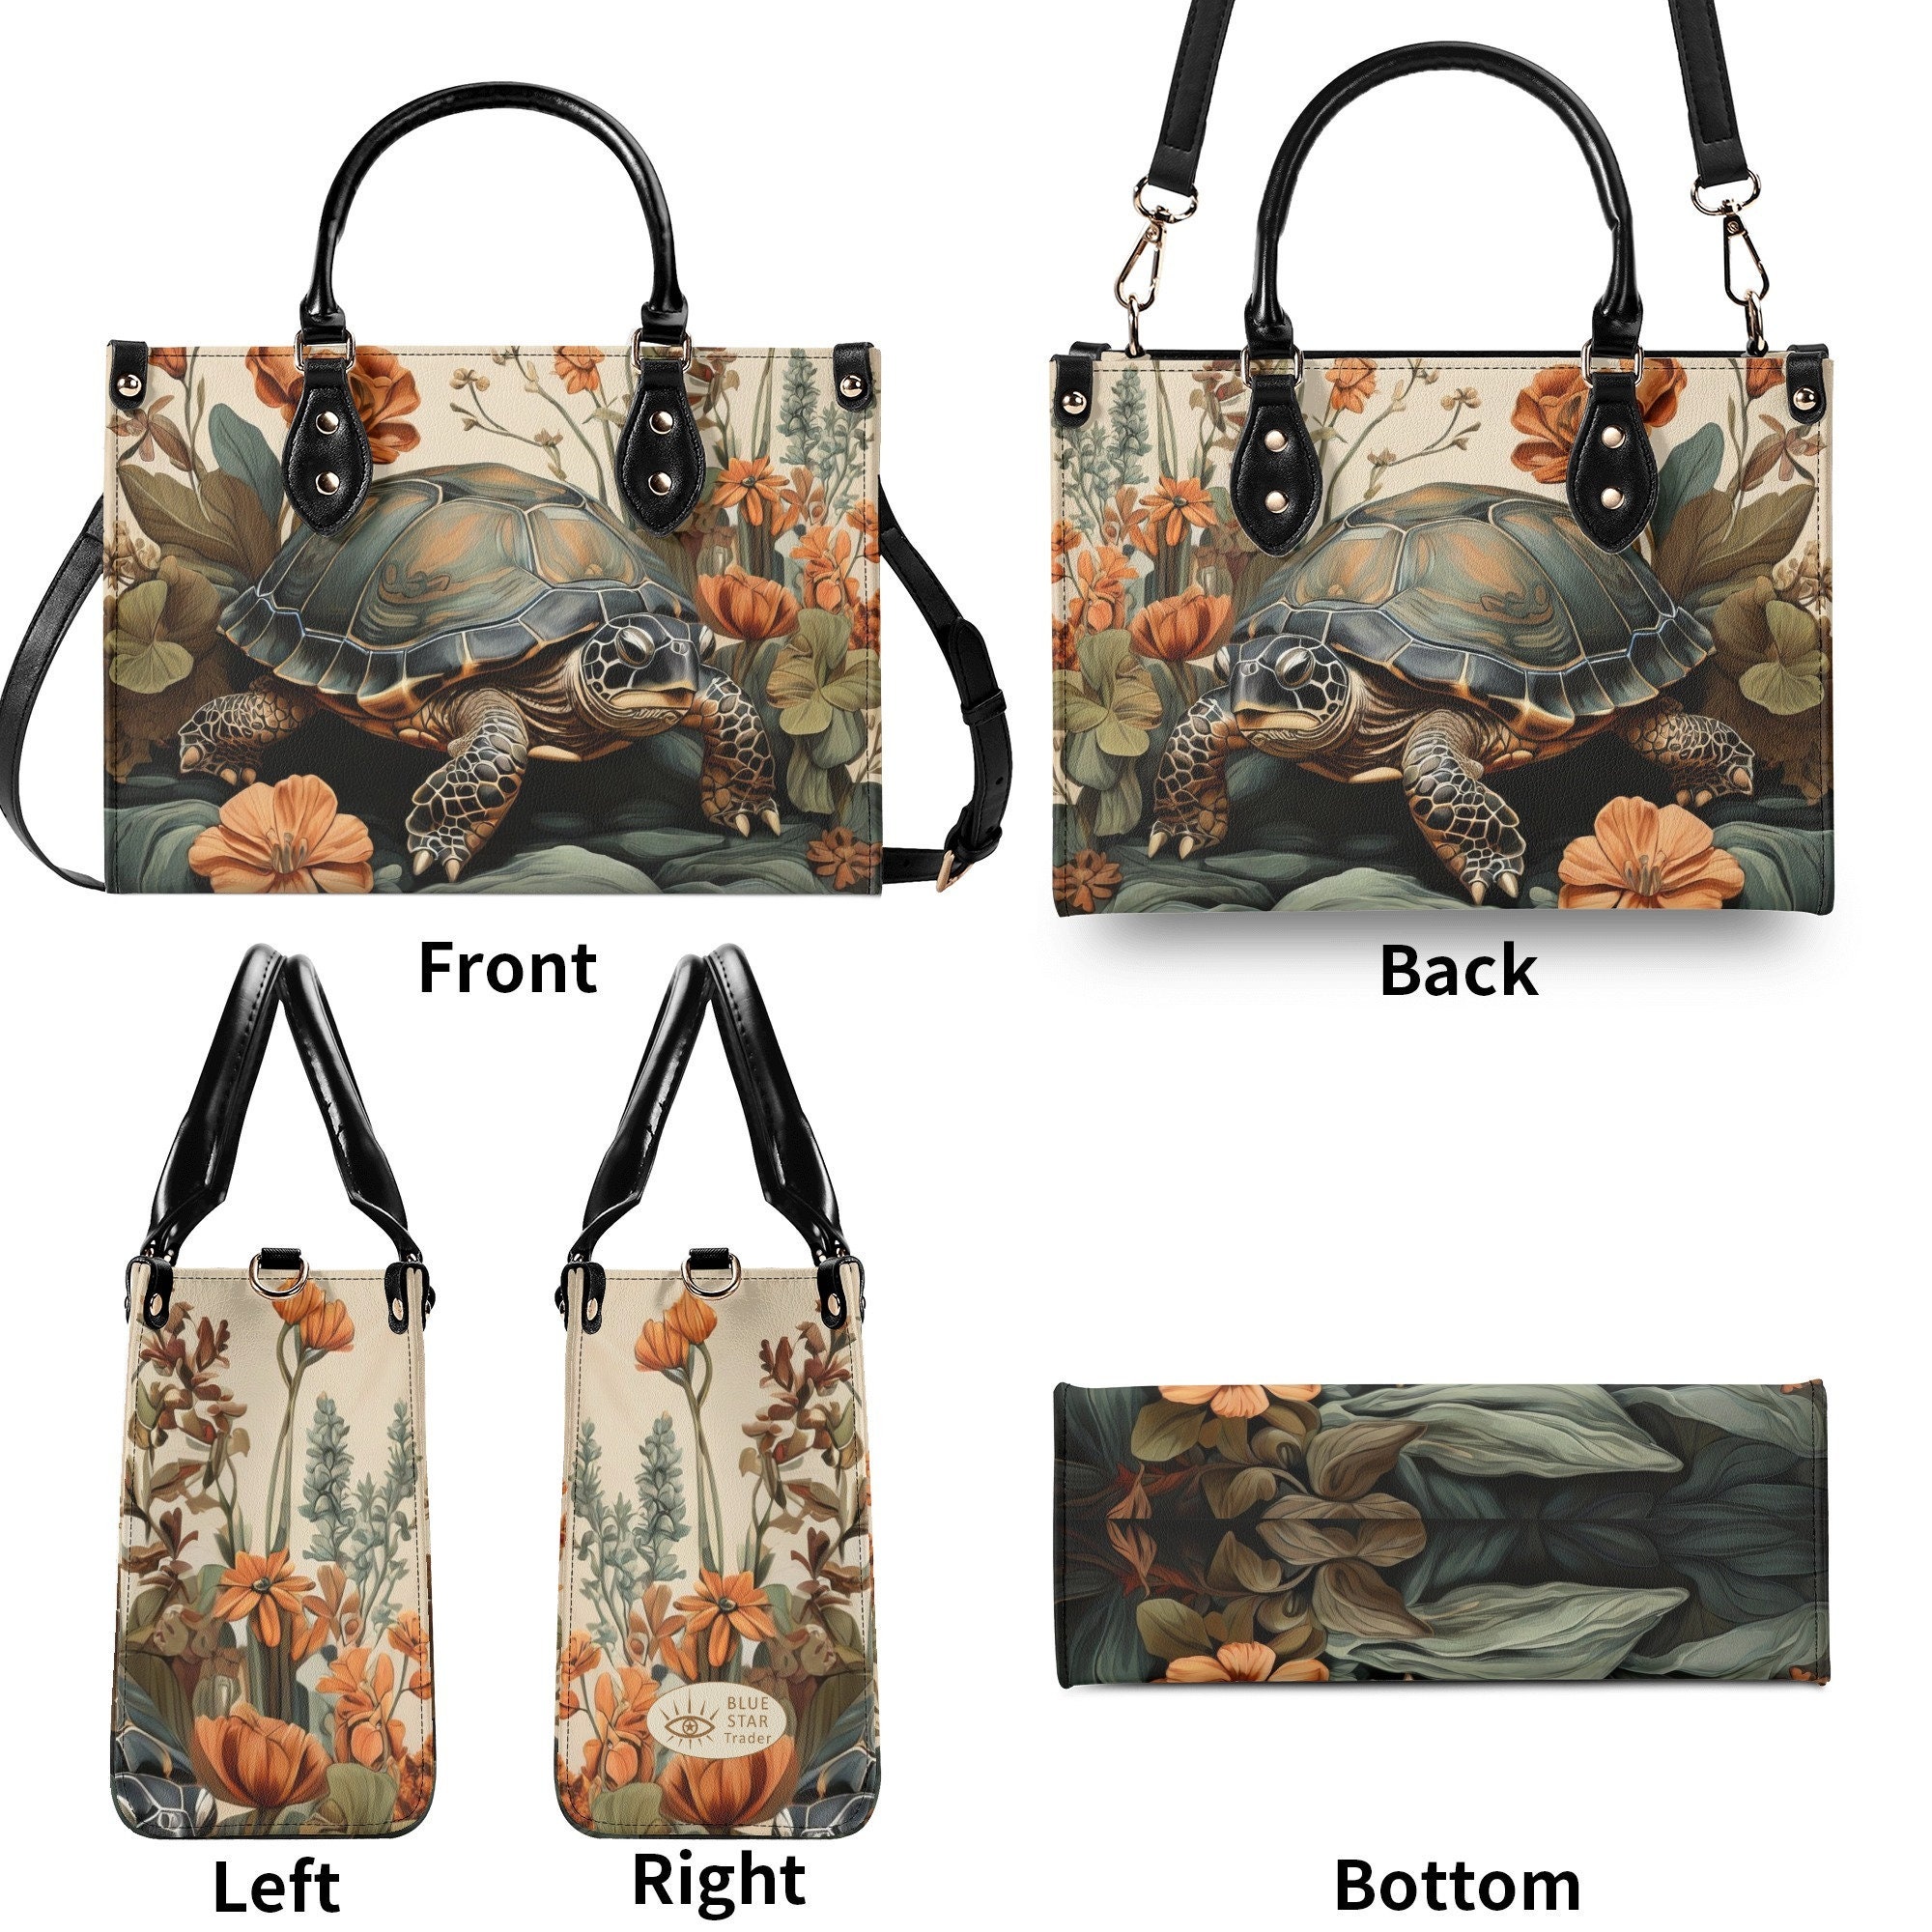 Turtle Purse Handbag, Vegan Leather Bag, Forest Tortoise Shoulder Bag